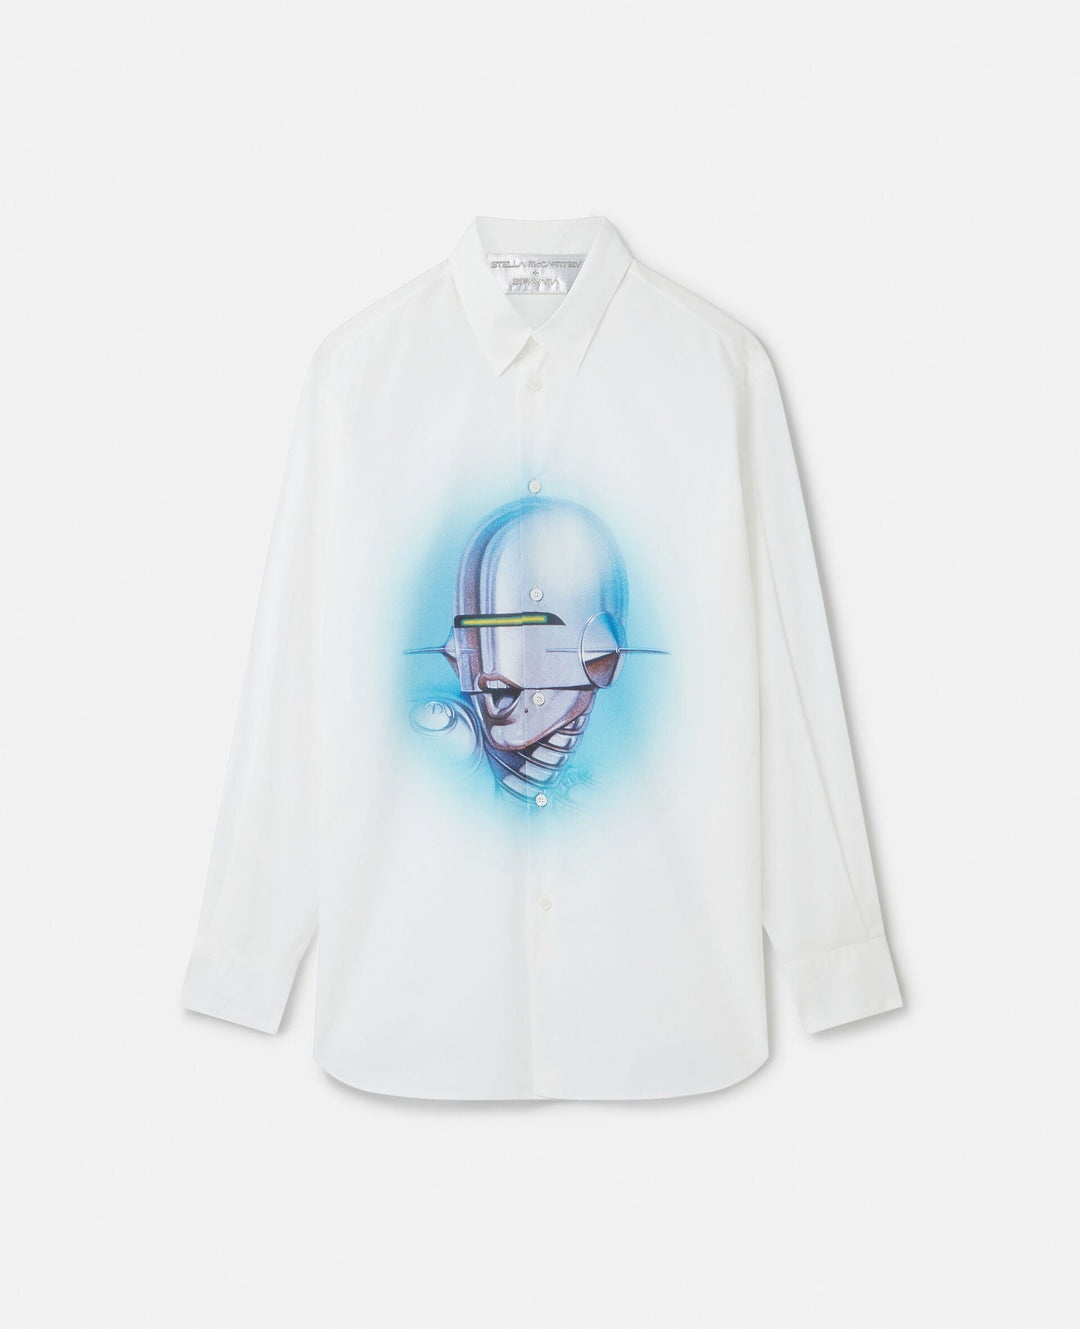 Stella McCartney + Sorayama Sexy Robot Print Organic Cotton Boyfriend Shirt - 1